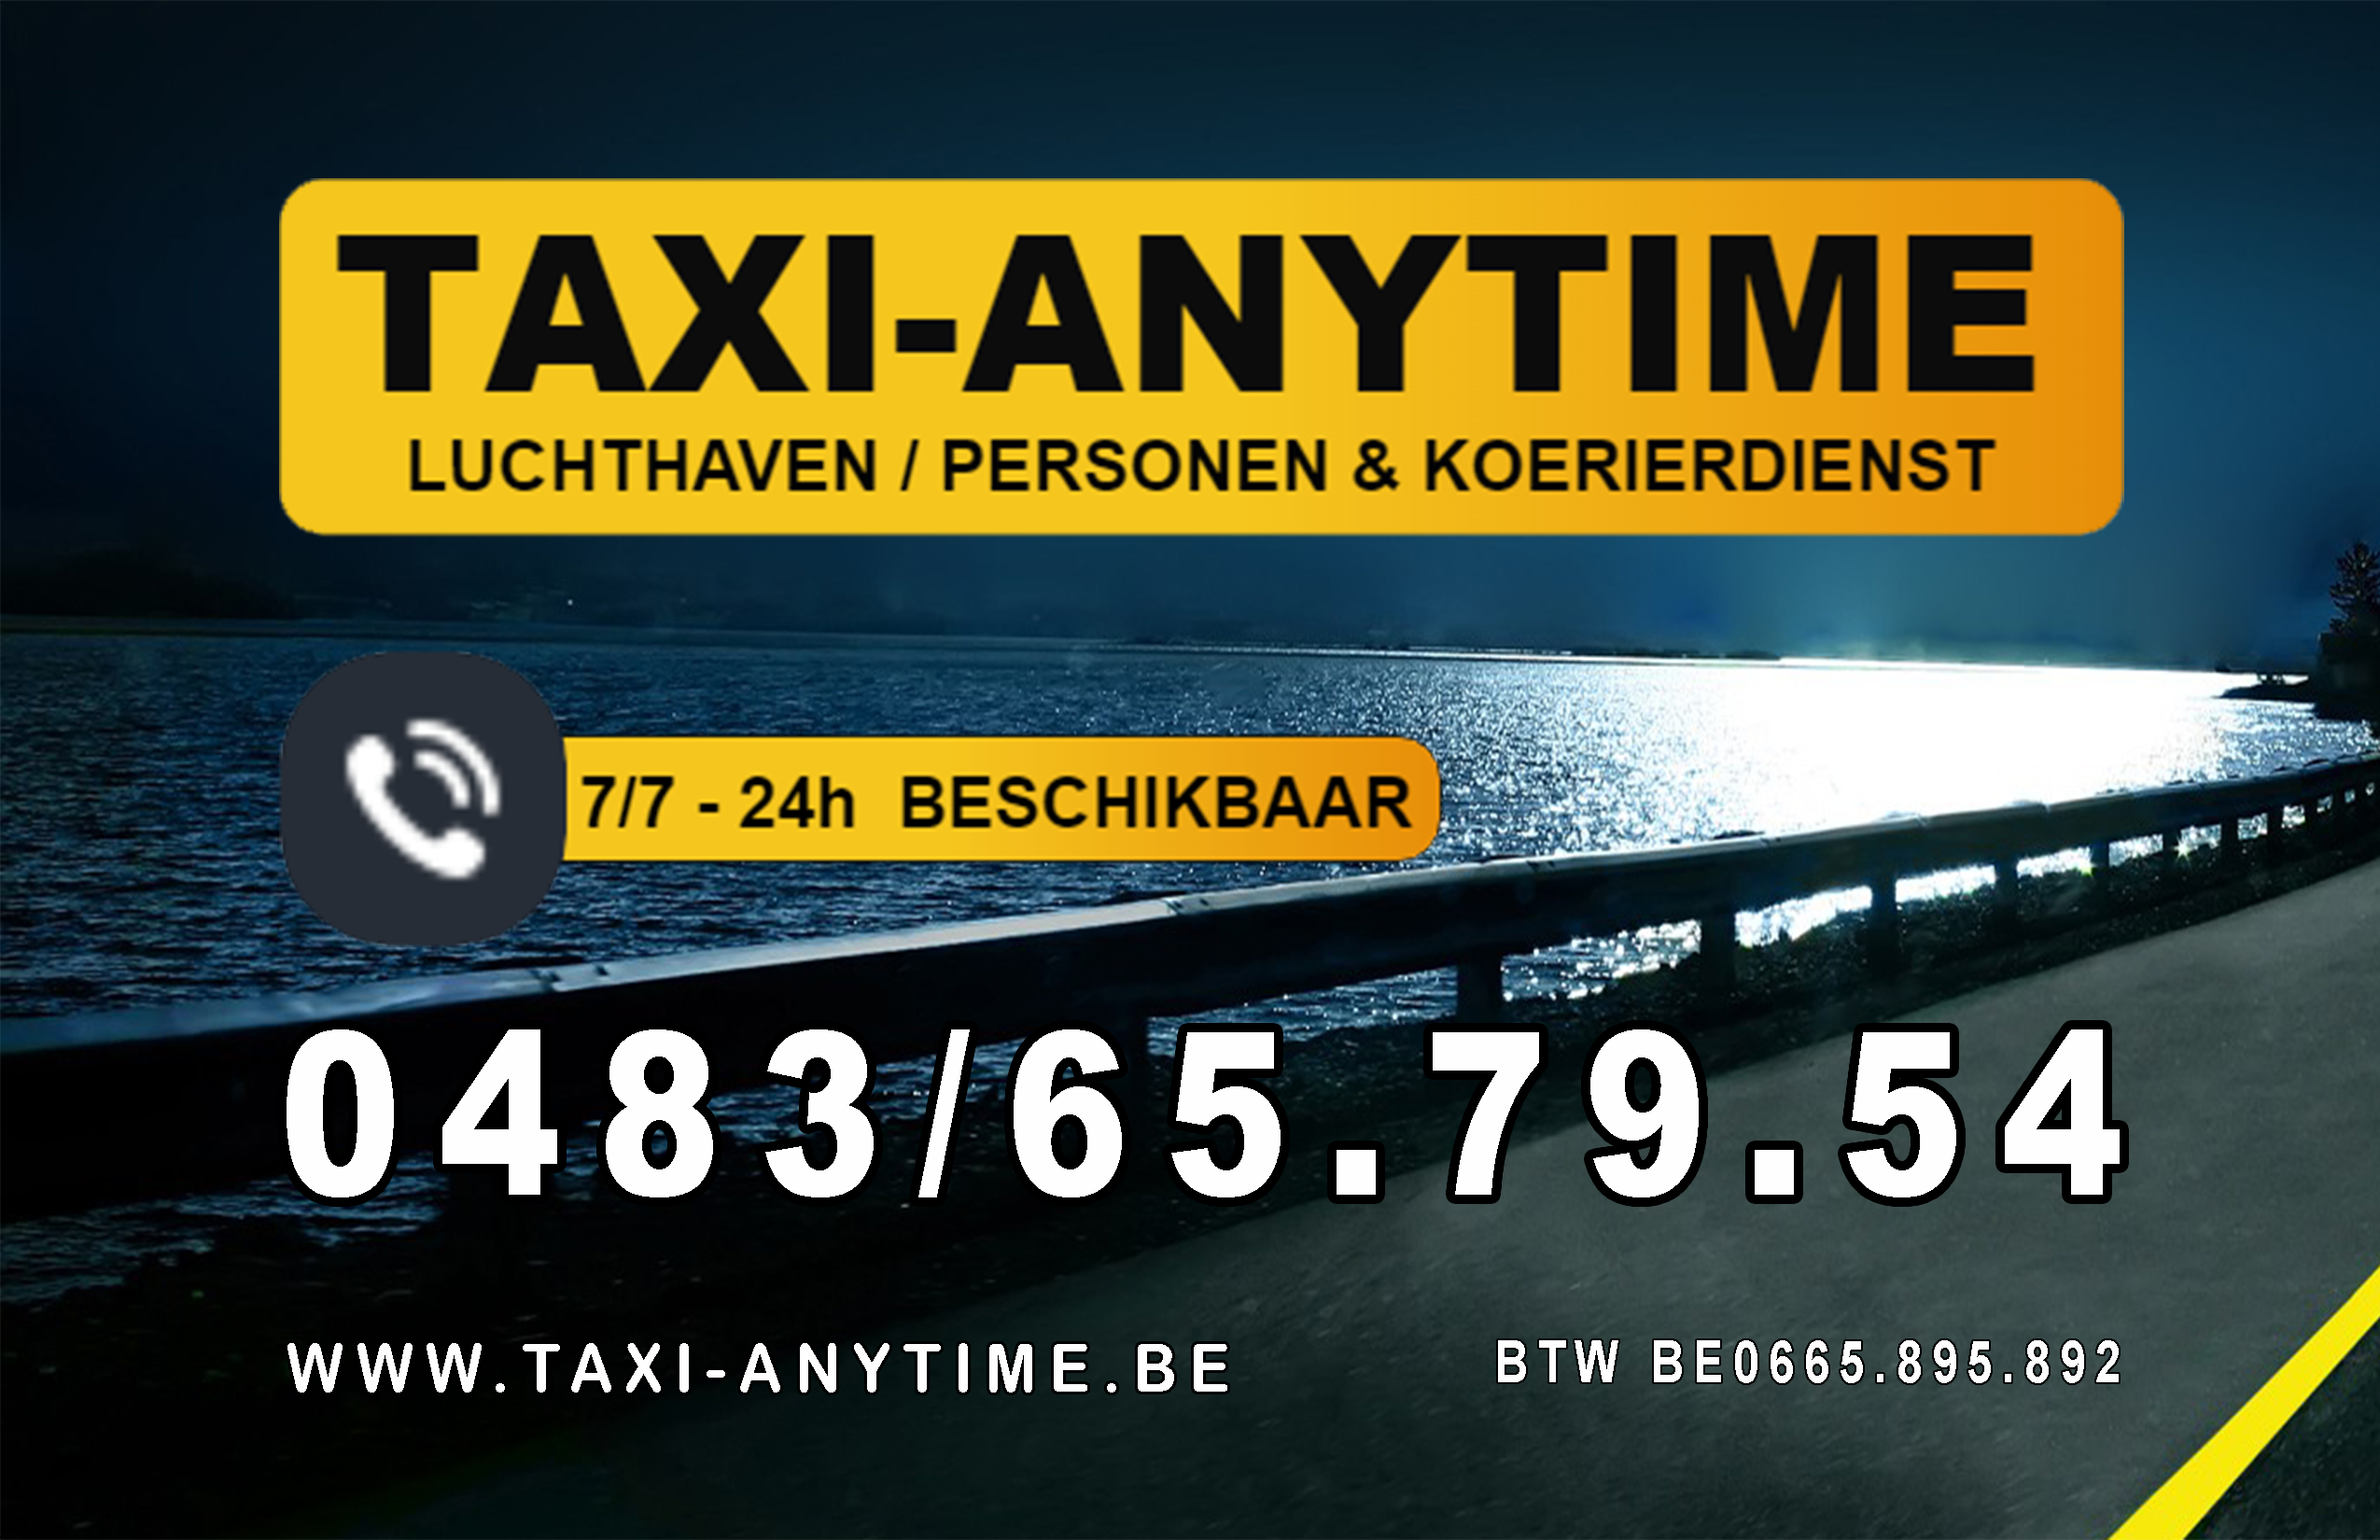 taxibedrijven met luchthavenvervoer Antwerpen Taxi-anytime